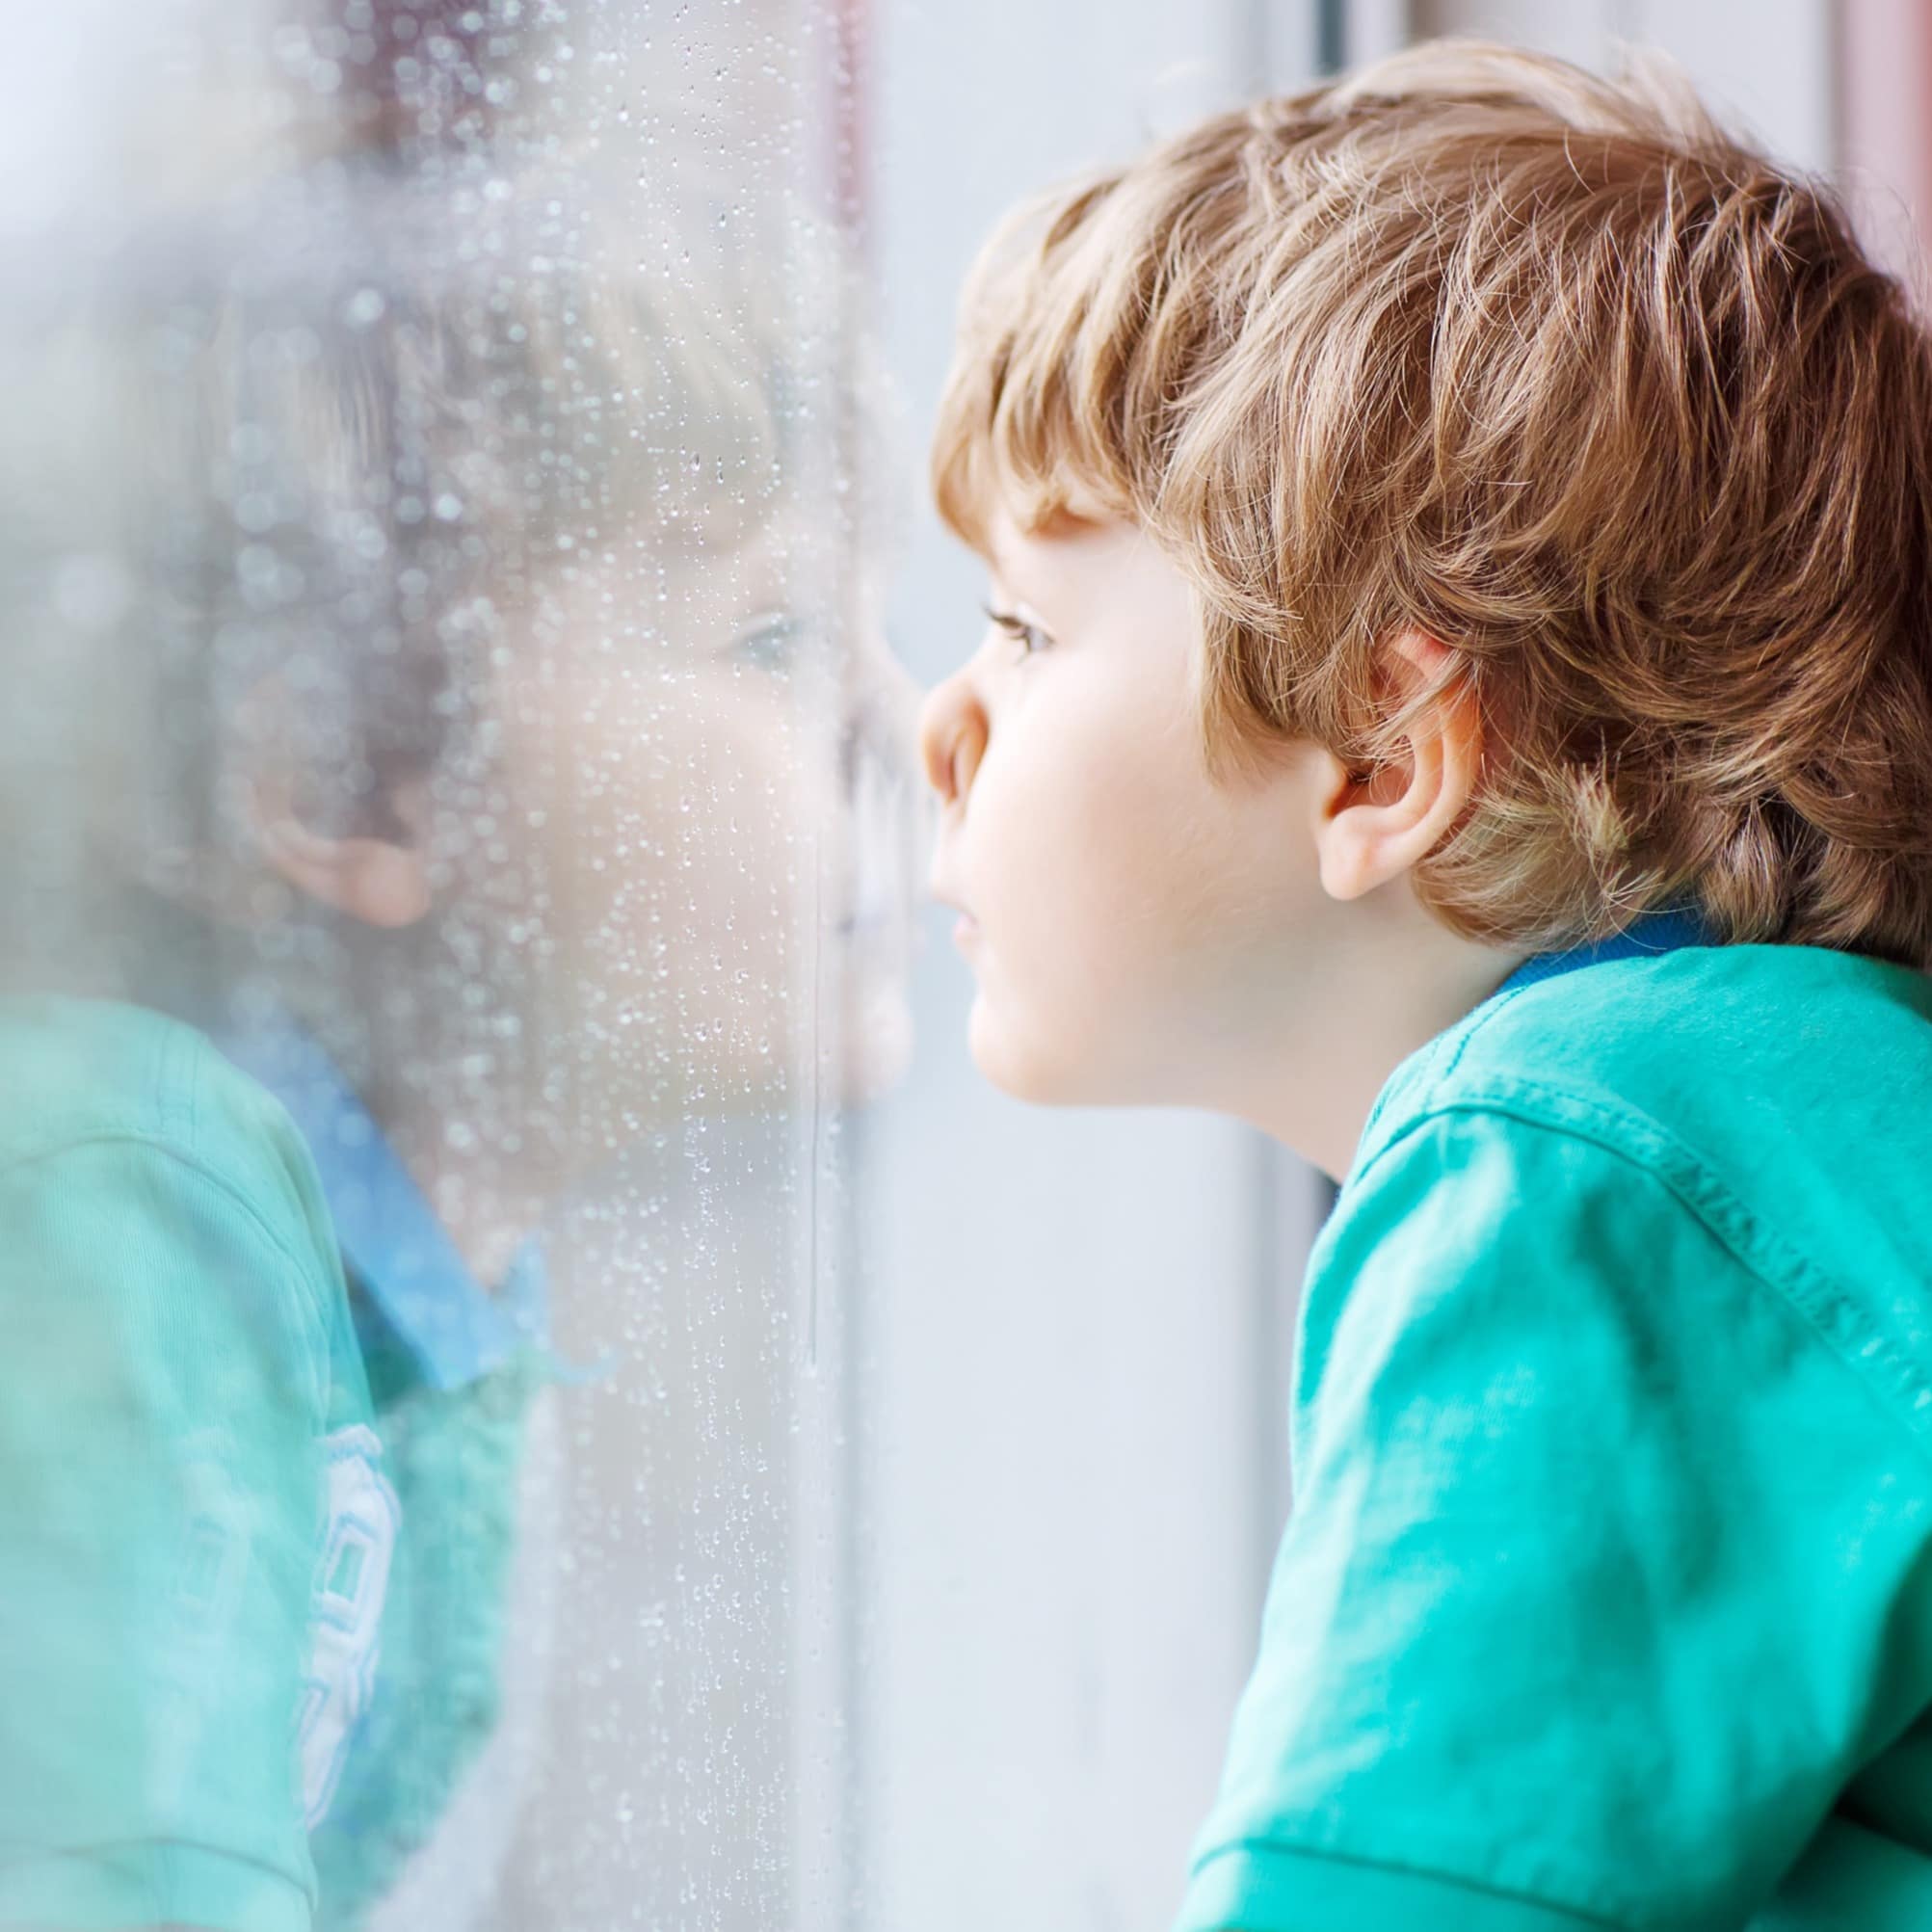 Kleiner Junge in grünem T-Shirt drückt die Nase an ein Fenster und schaut in den Regen.